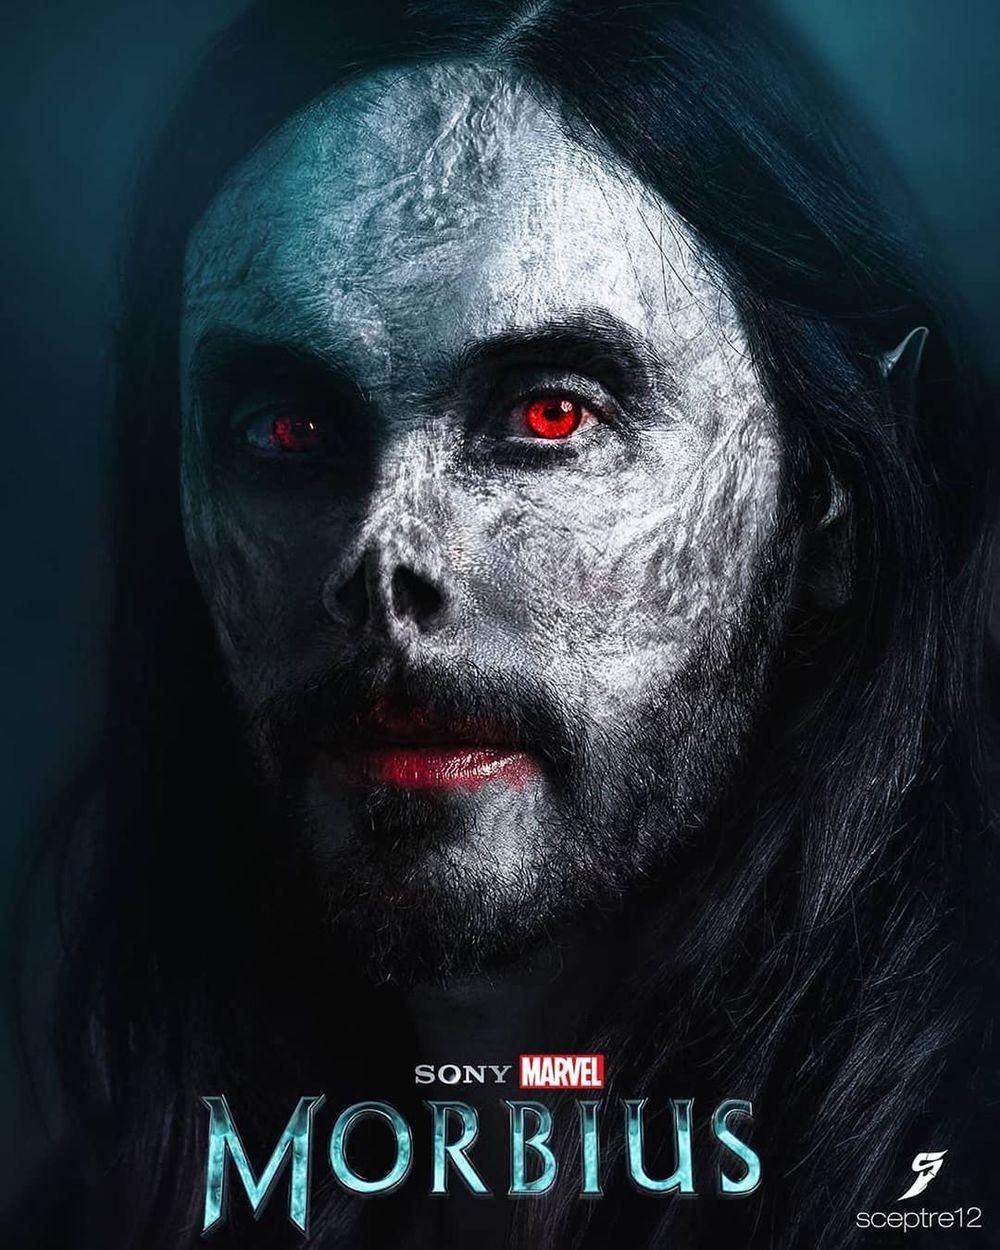  
Jared Leto sẽ đảm nhận vai phản anh hùng trong Morbius. (Ảnh: Marvel)